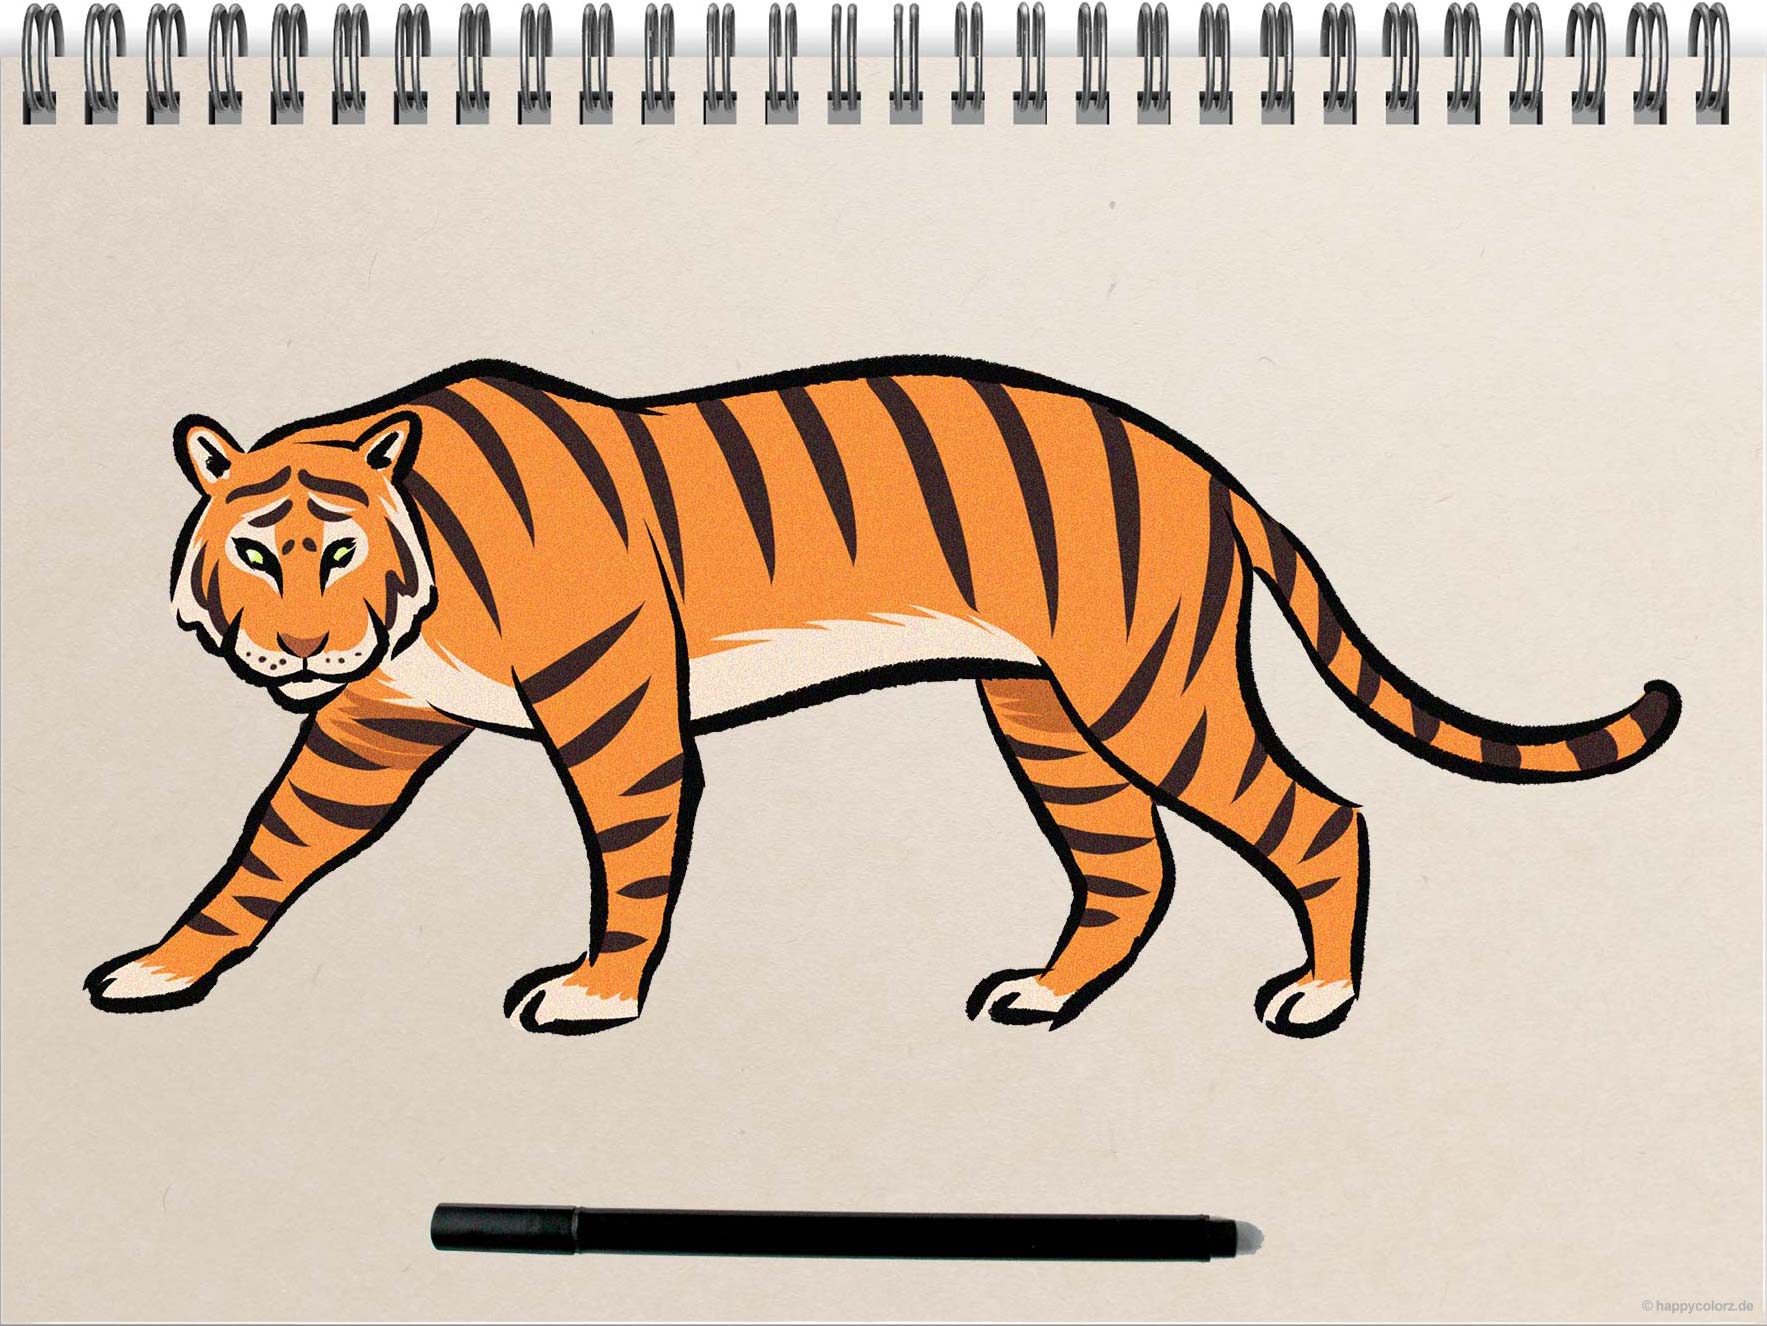 Tiger malen - Schritt-für-Schritt Anleitung mit Vorlagen